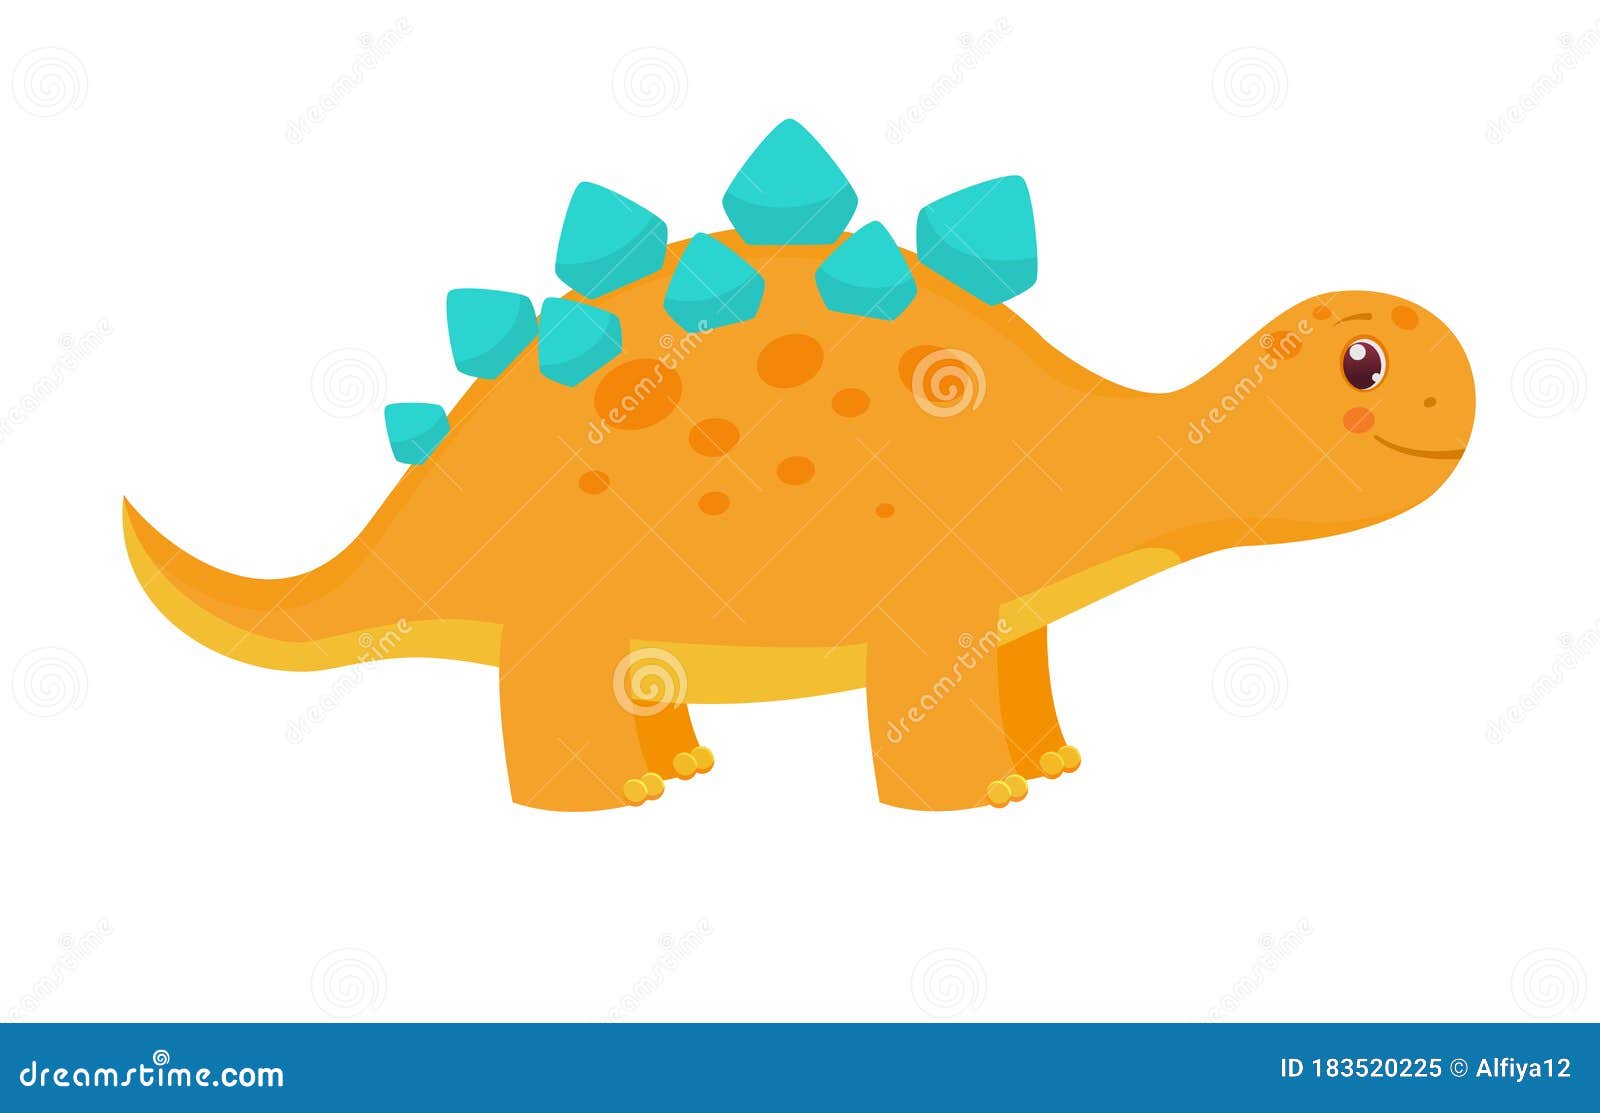 Cute Dinosaur Cartoon Stock Illustrations – 38,110 Cute Dinosaur Cartoon  Stock Illustrations, Vectors & Clipart - Dreamstime